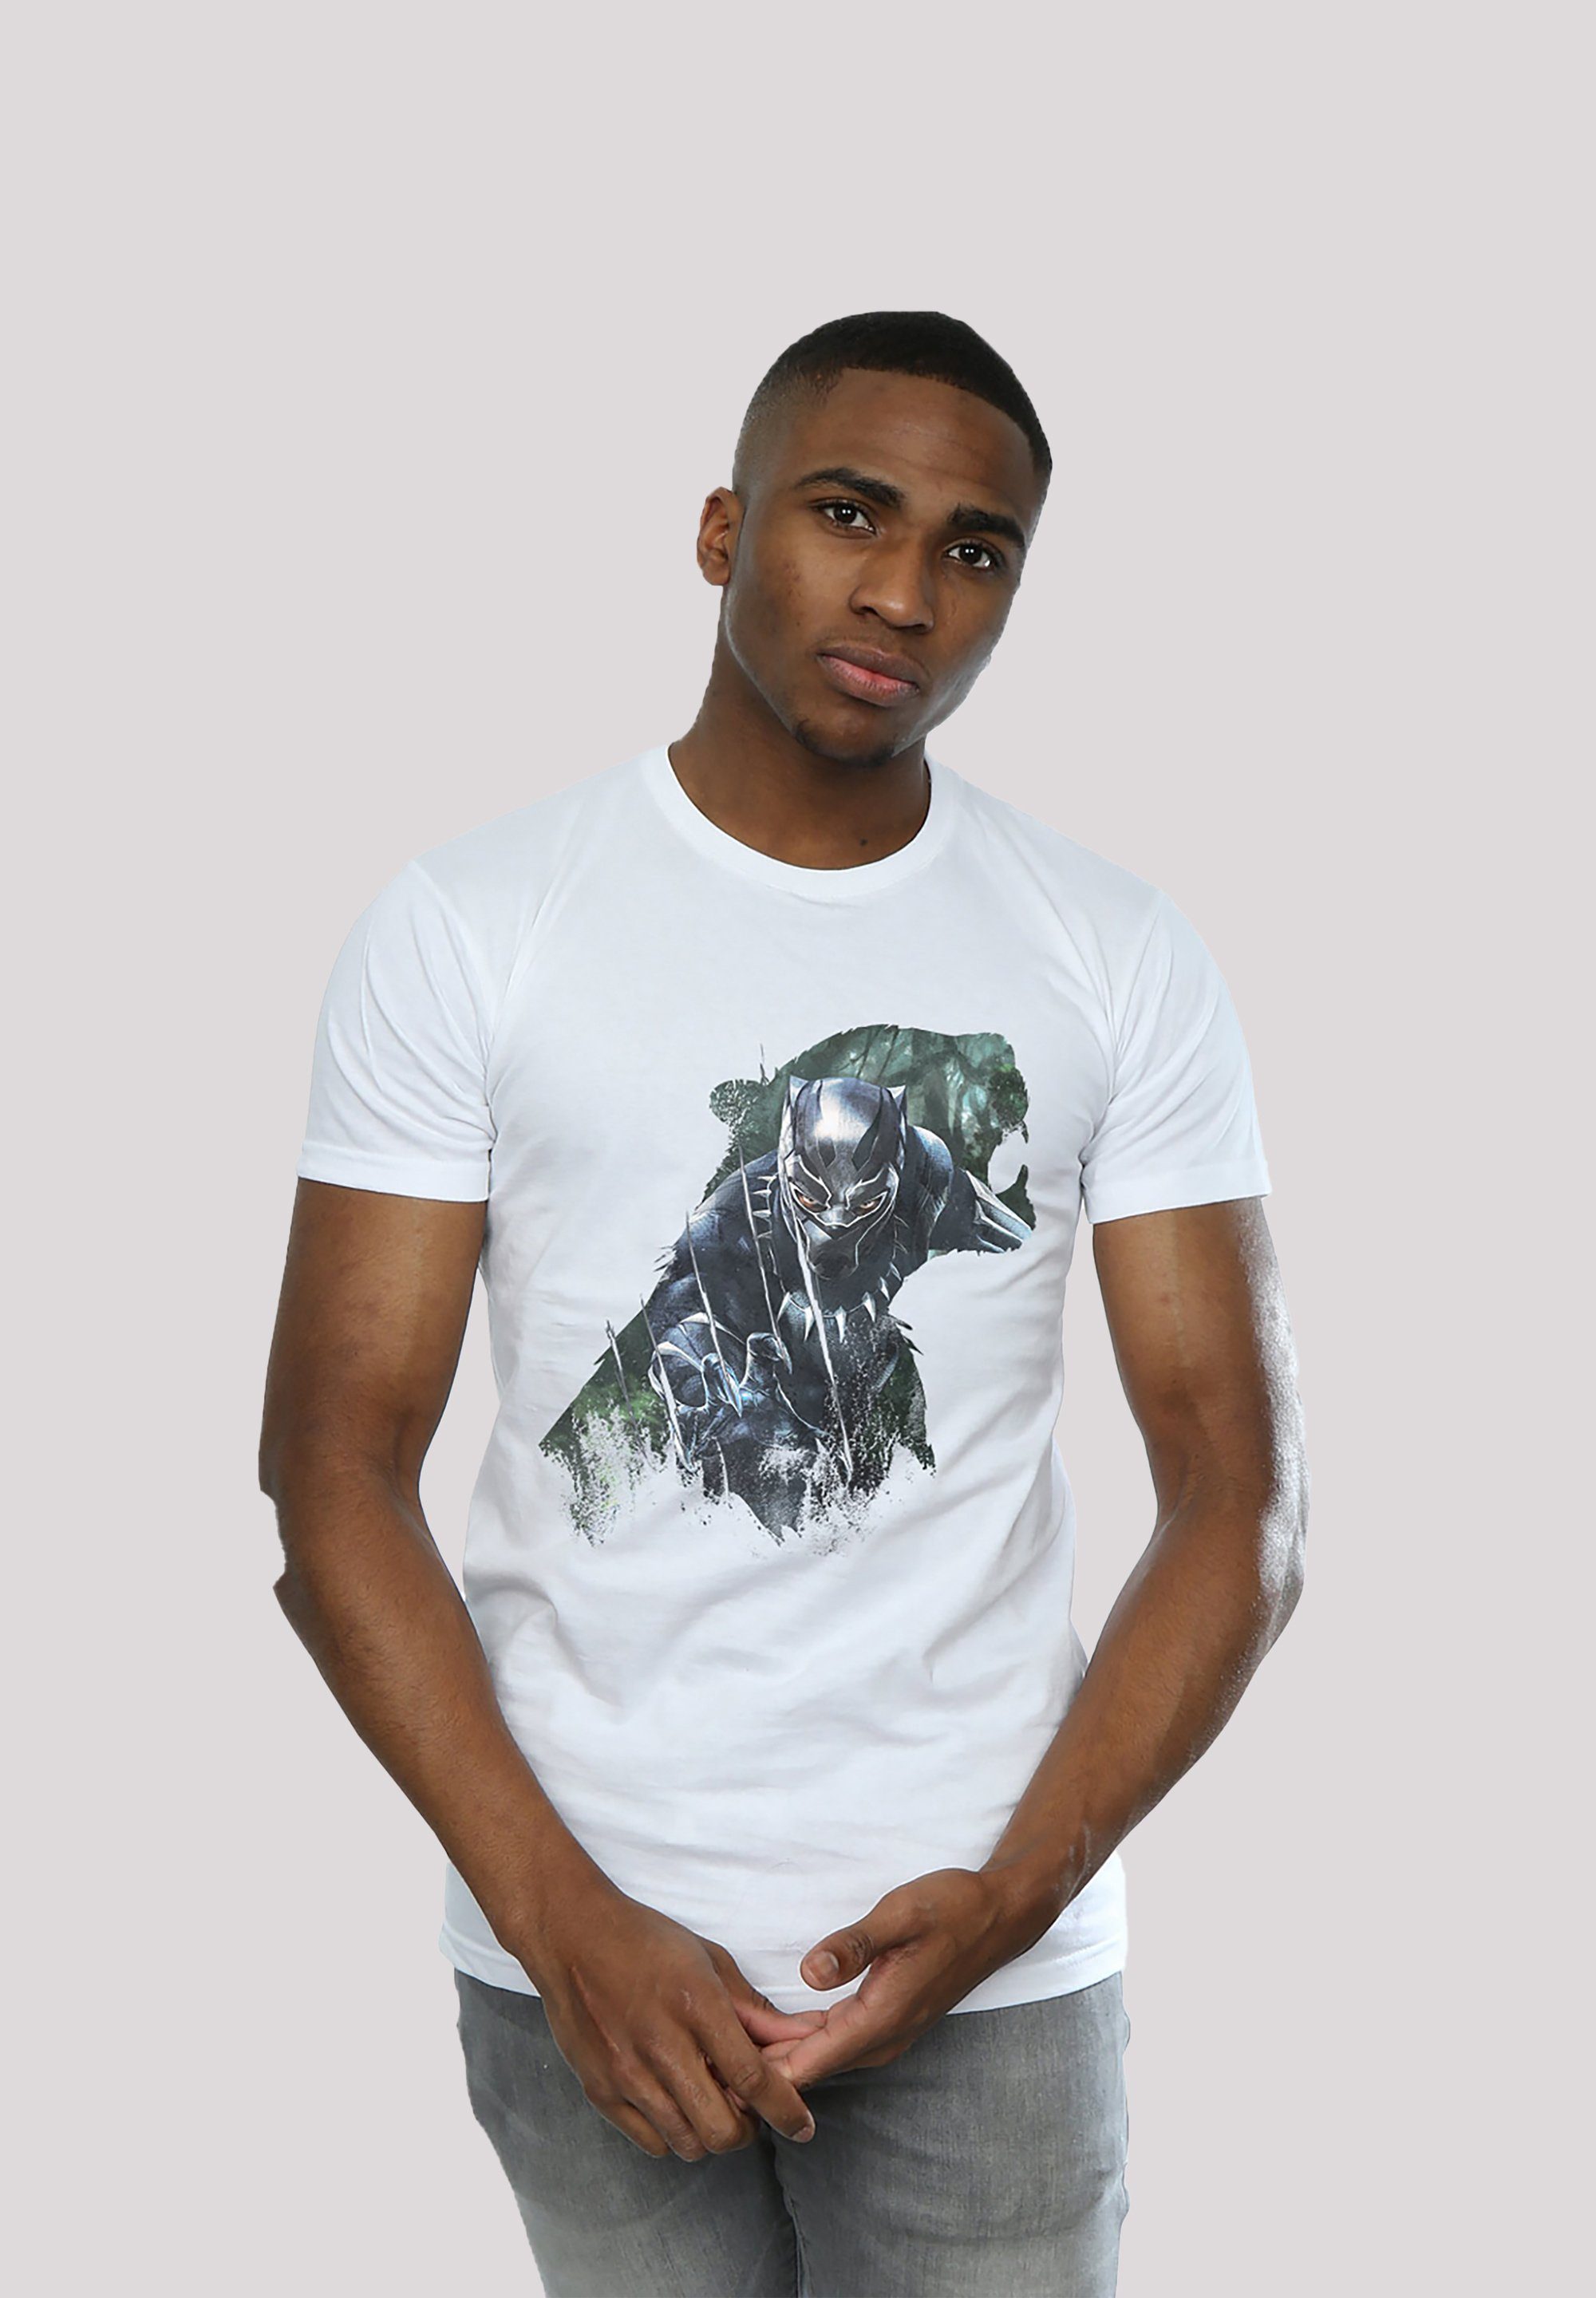 F4NT4STIC T-Shirt Marvel Black hohem Panther weicher Baumwollstoff Tragekomfort Wild Sillhouette Sehr mit Print